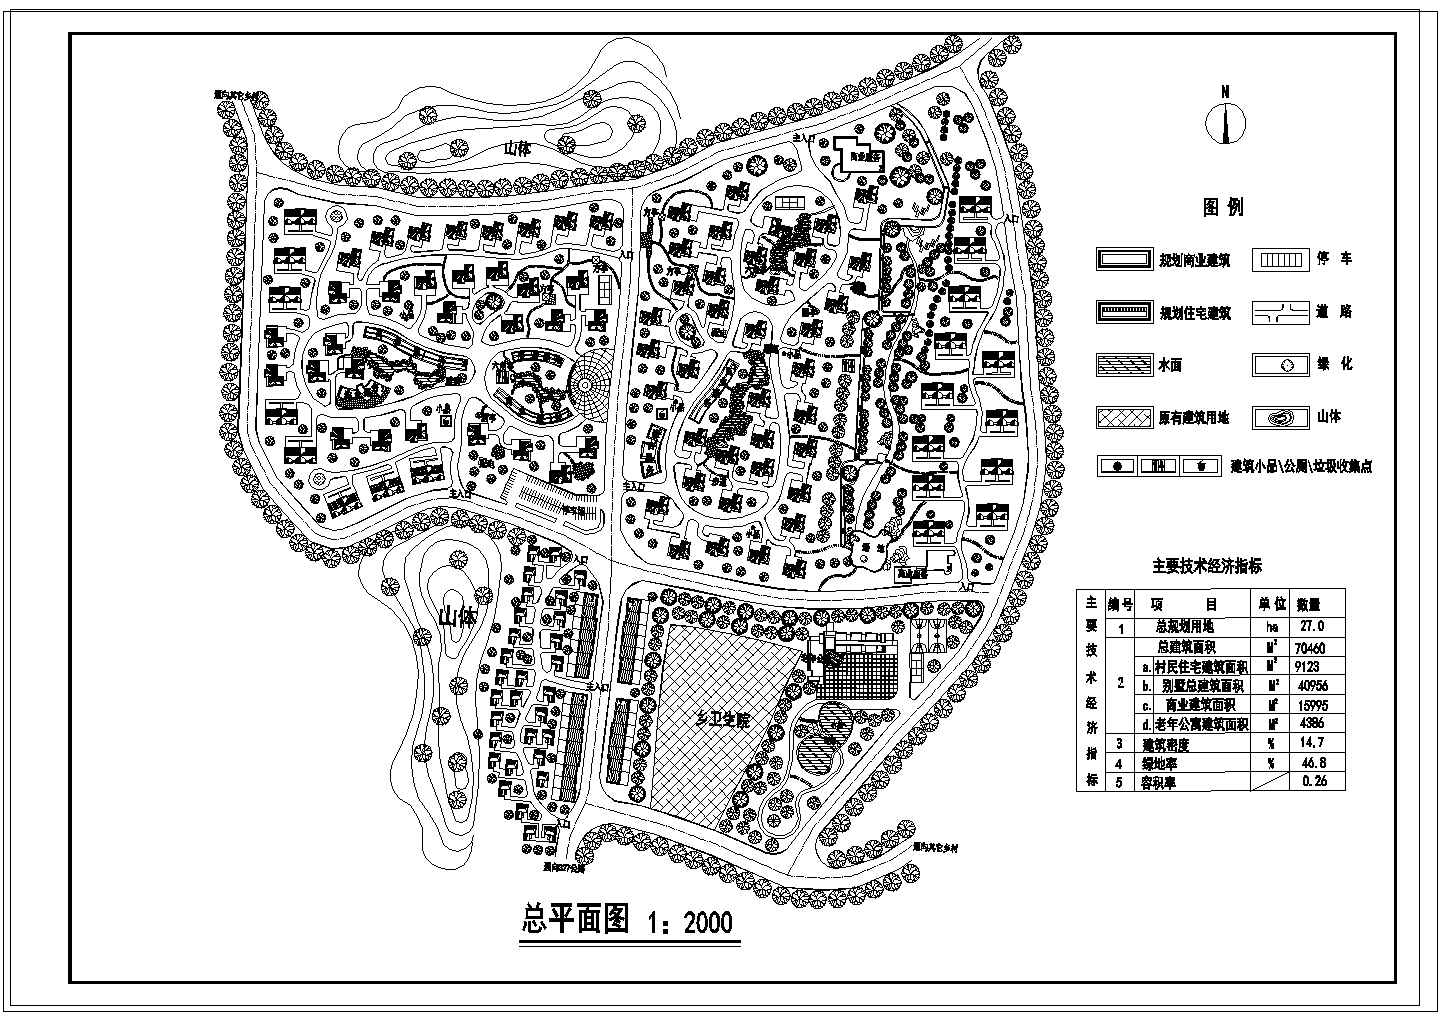 总规划用地27ha旧村改造规划总平面图1张 含主要技术经济指标cad图纸